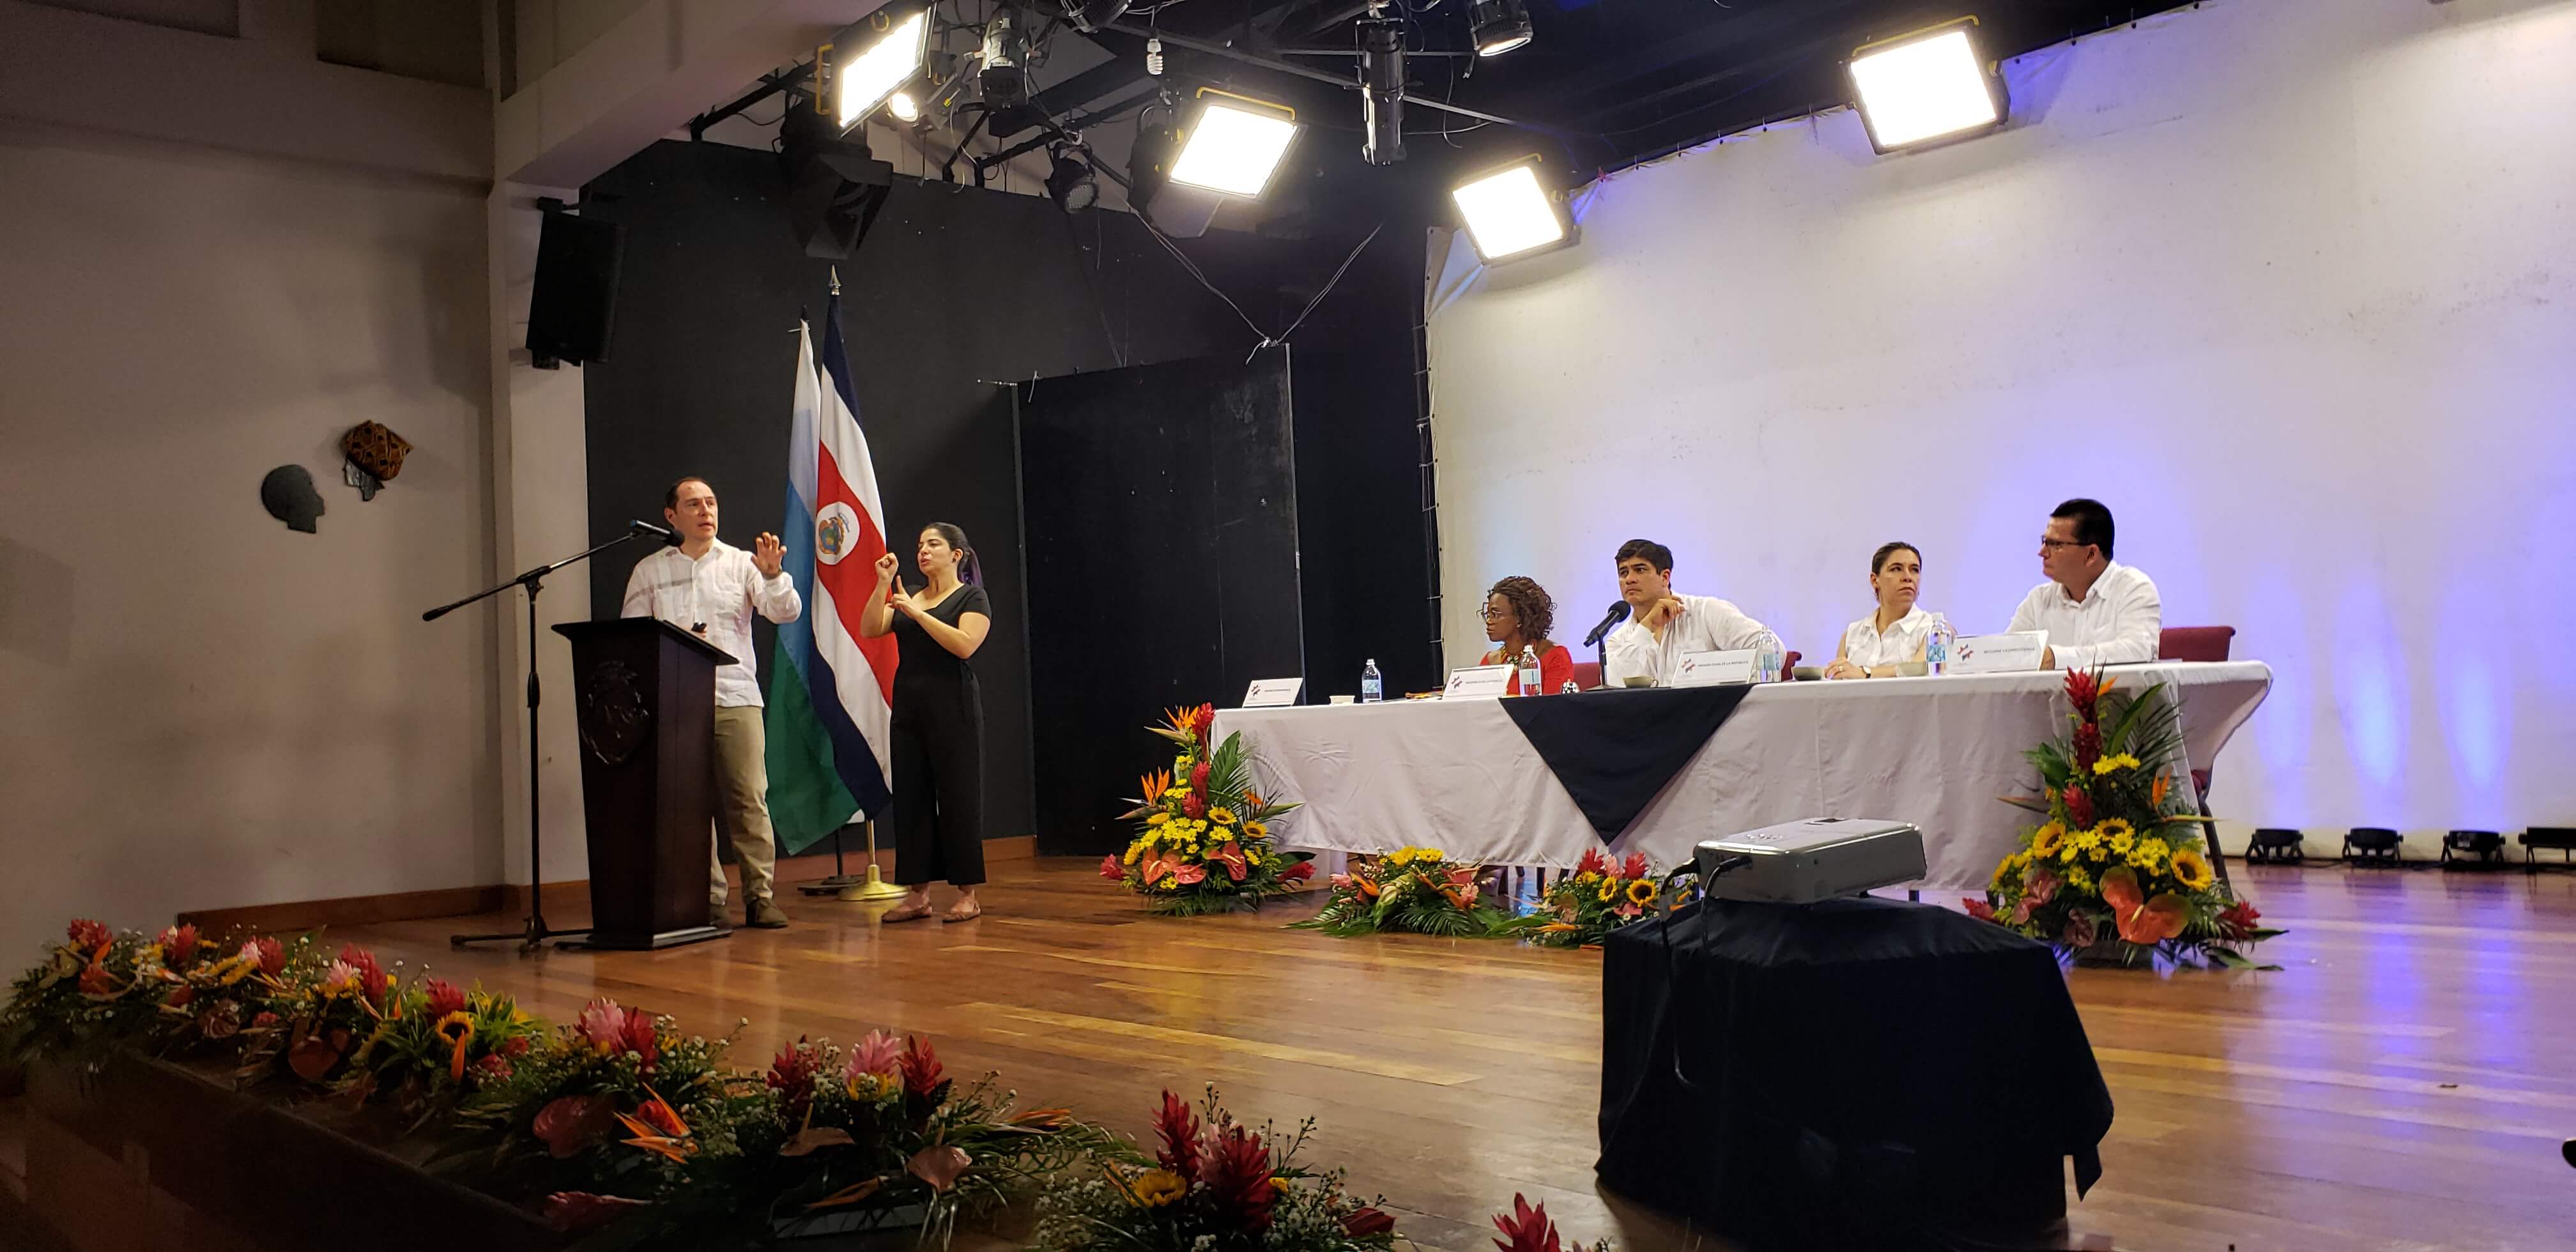 El señor Tomás Martínez explica en Consejo de Gobierno los proyectos del INVU para la provincia de Limón.